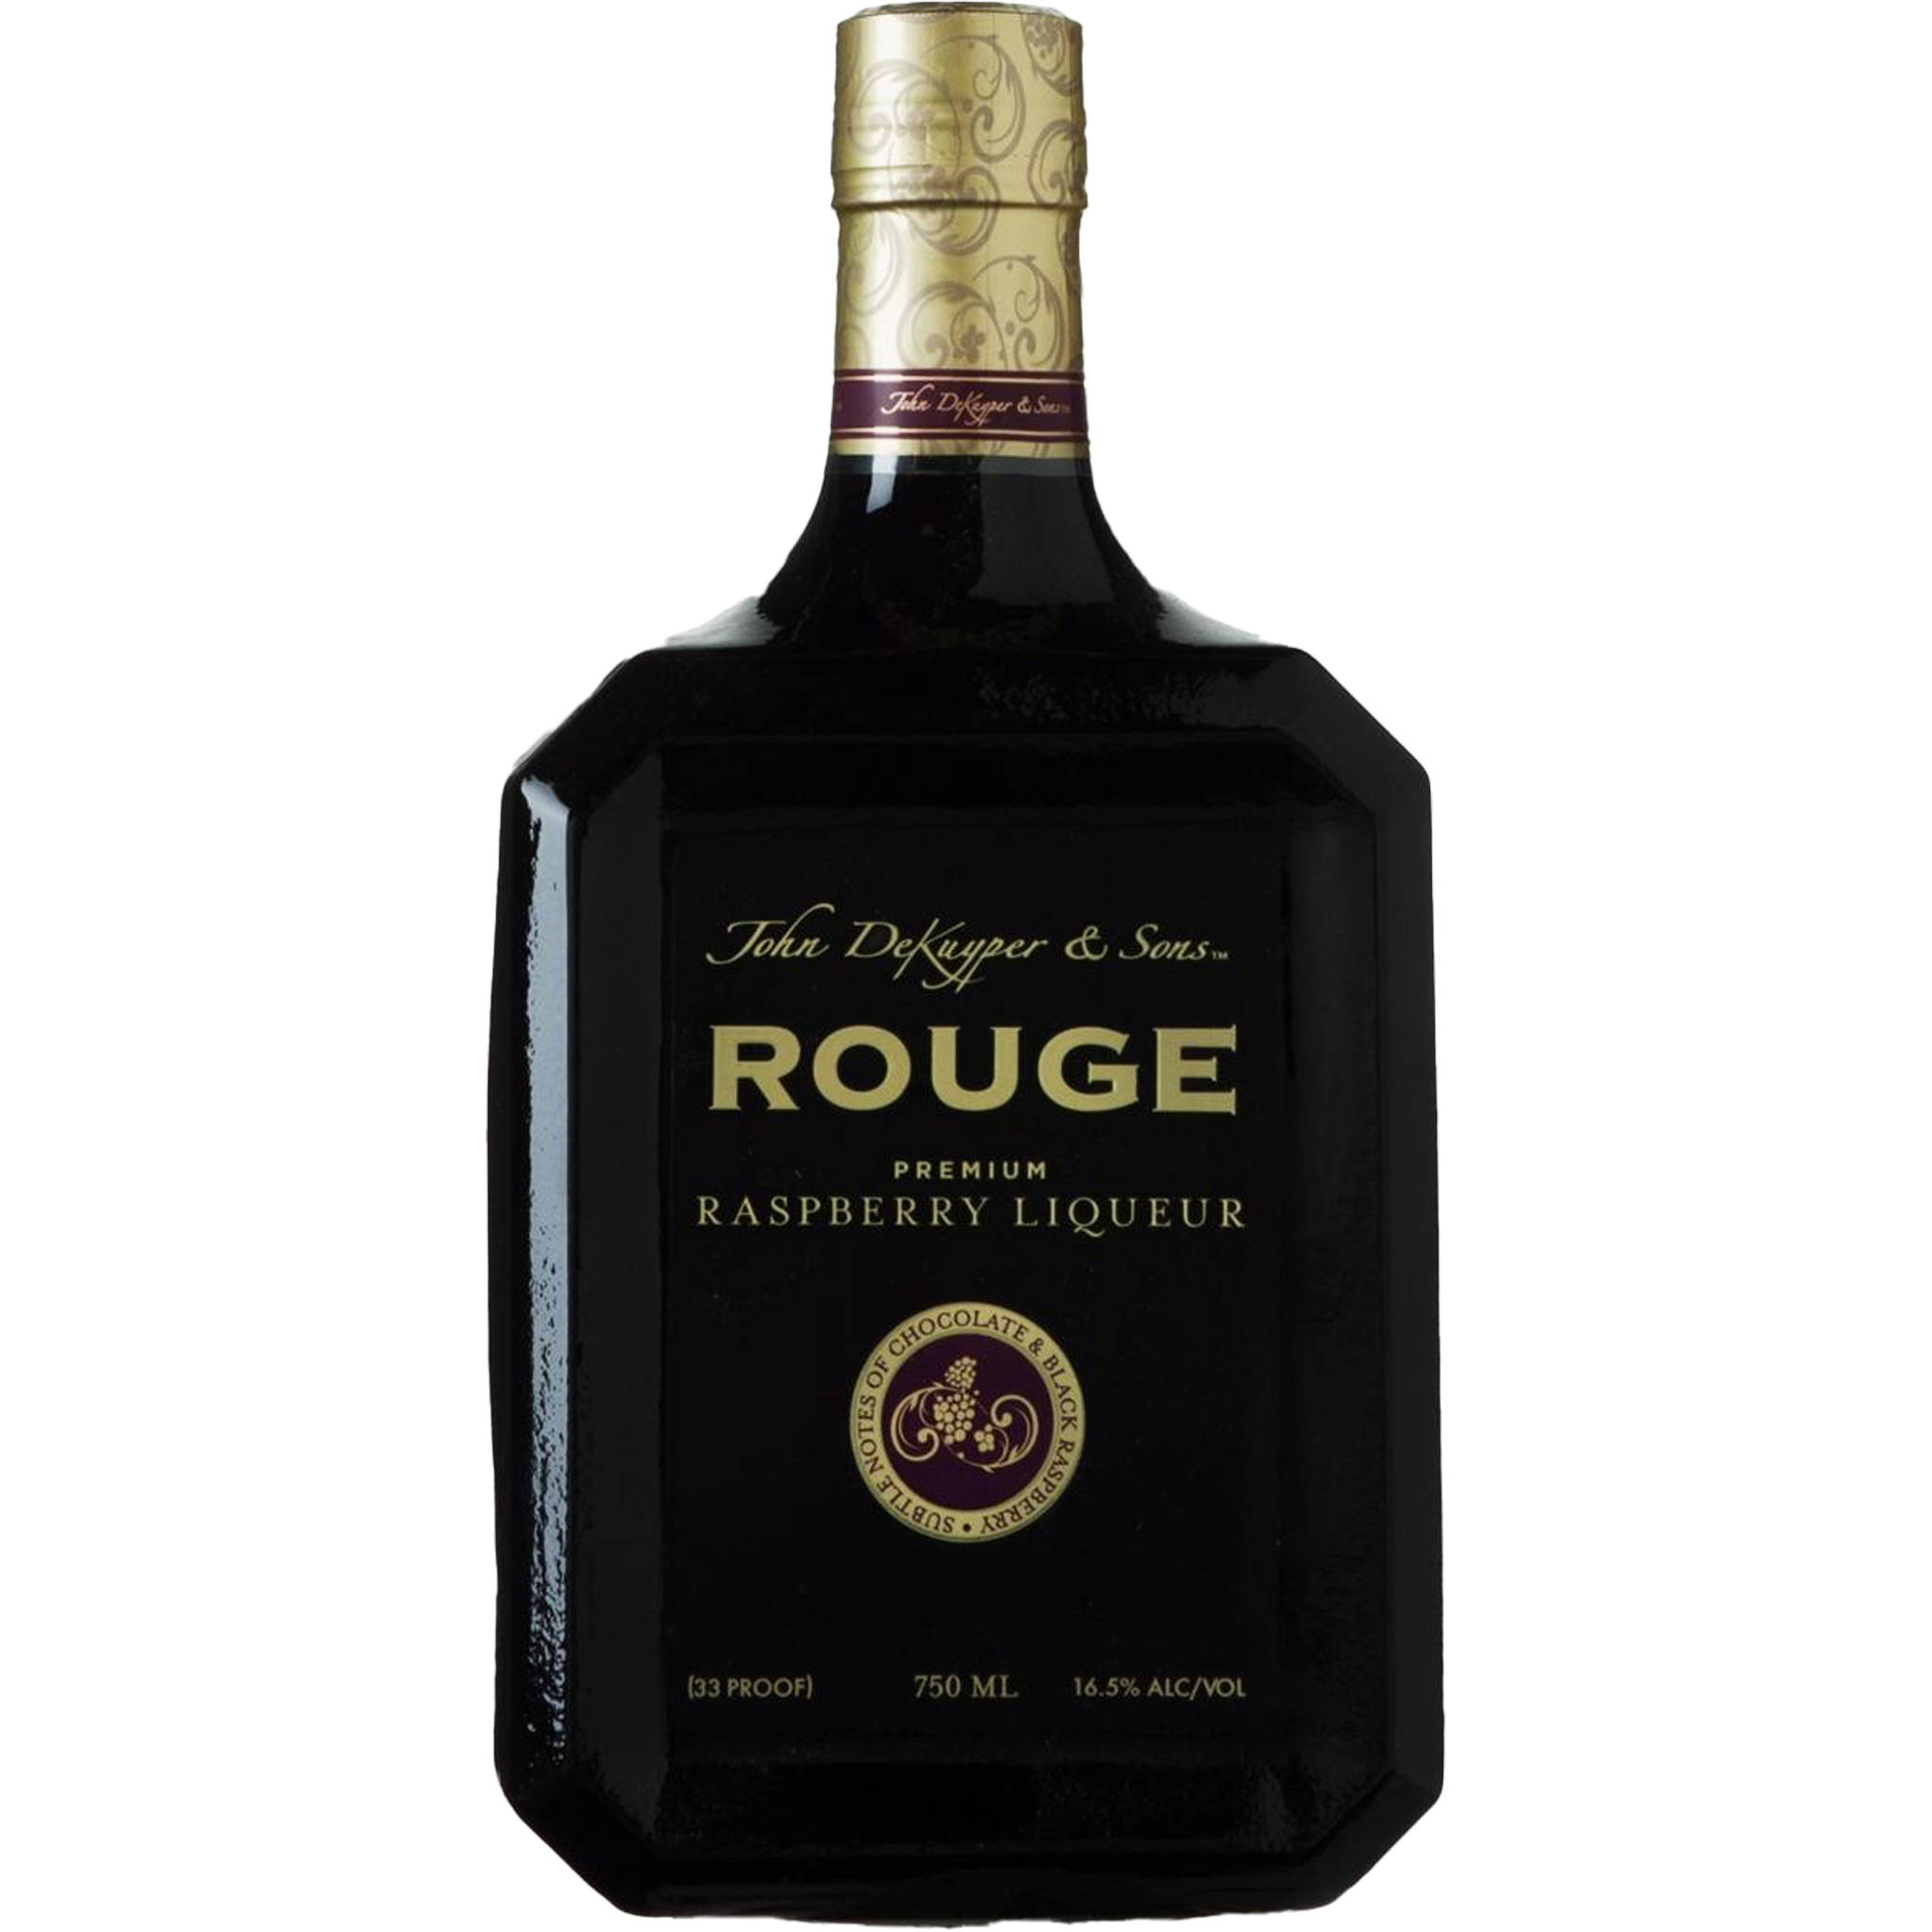 John Dekuyper & Sons 'Rouge' Raspberry Liqueur 1 Liter